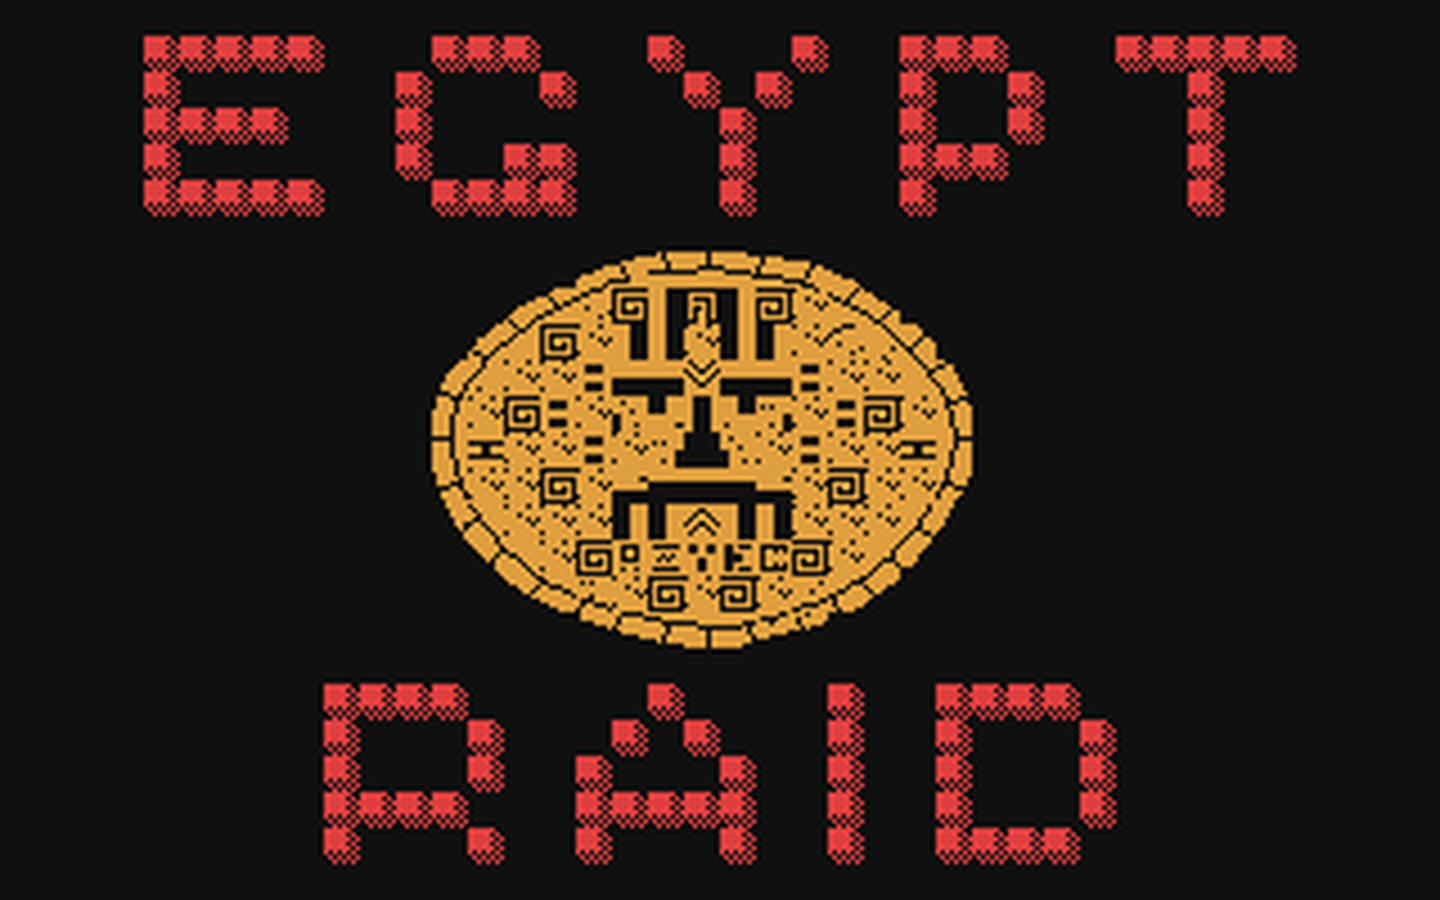 C64 GameBase Egypt_Raid Edisoft_S.r.l./Next_Game 1984